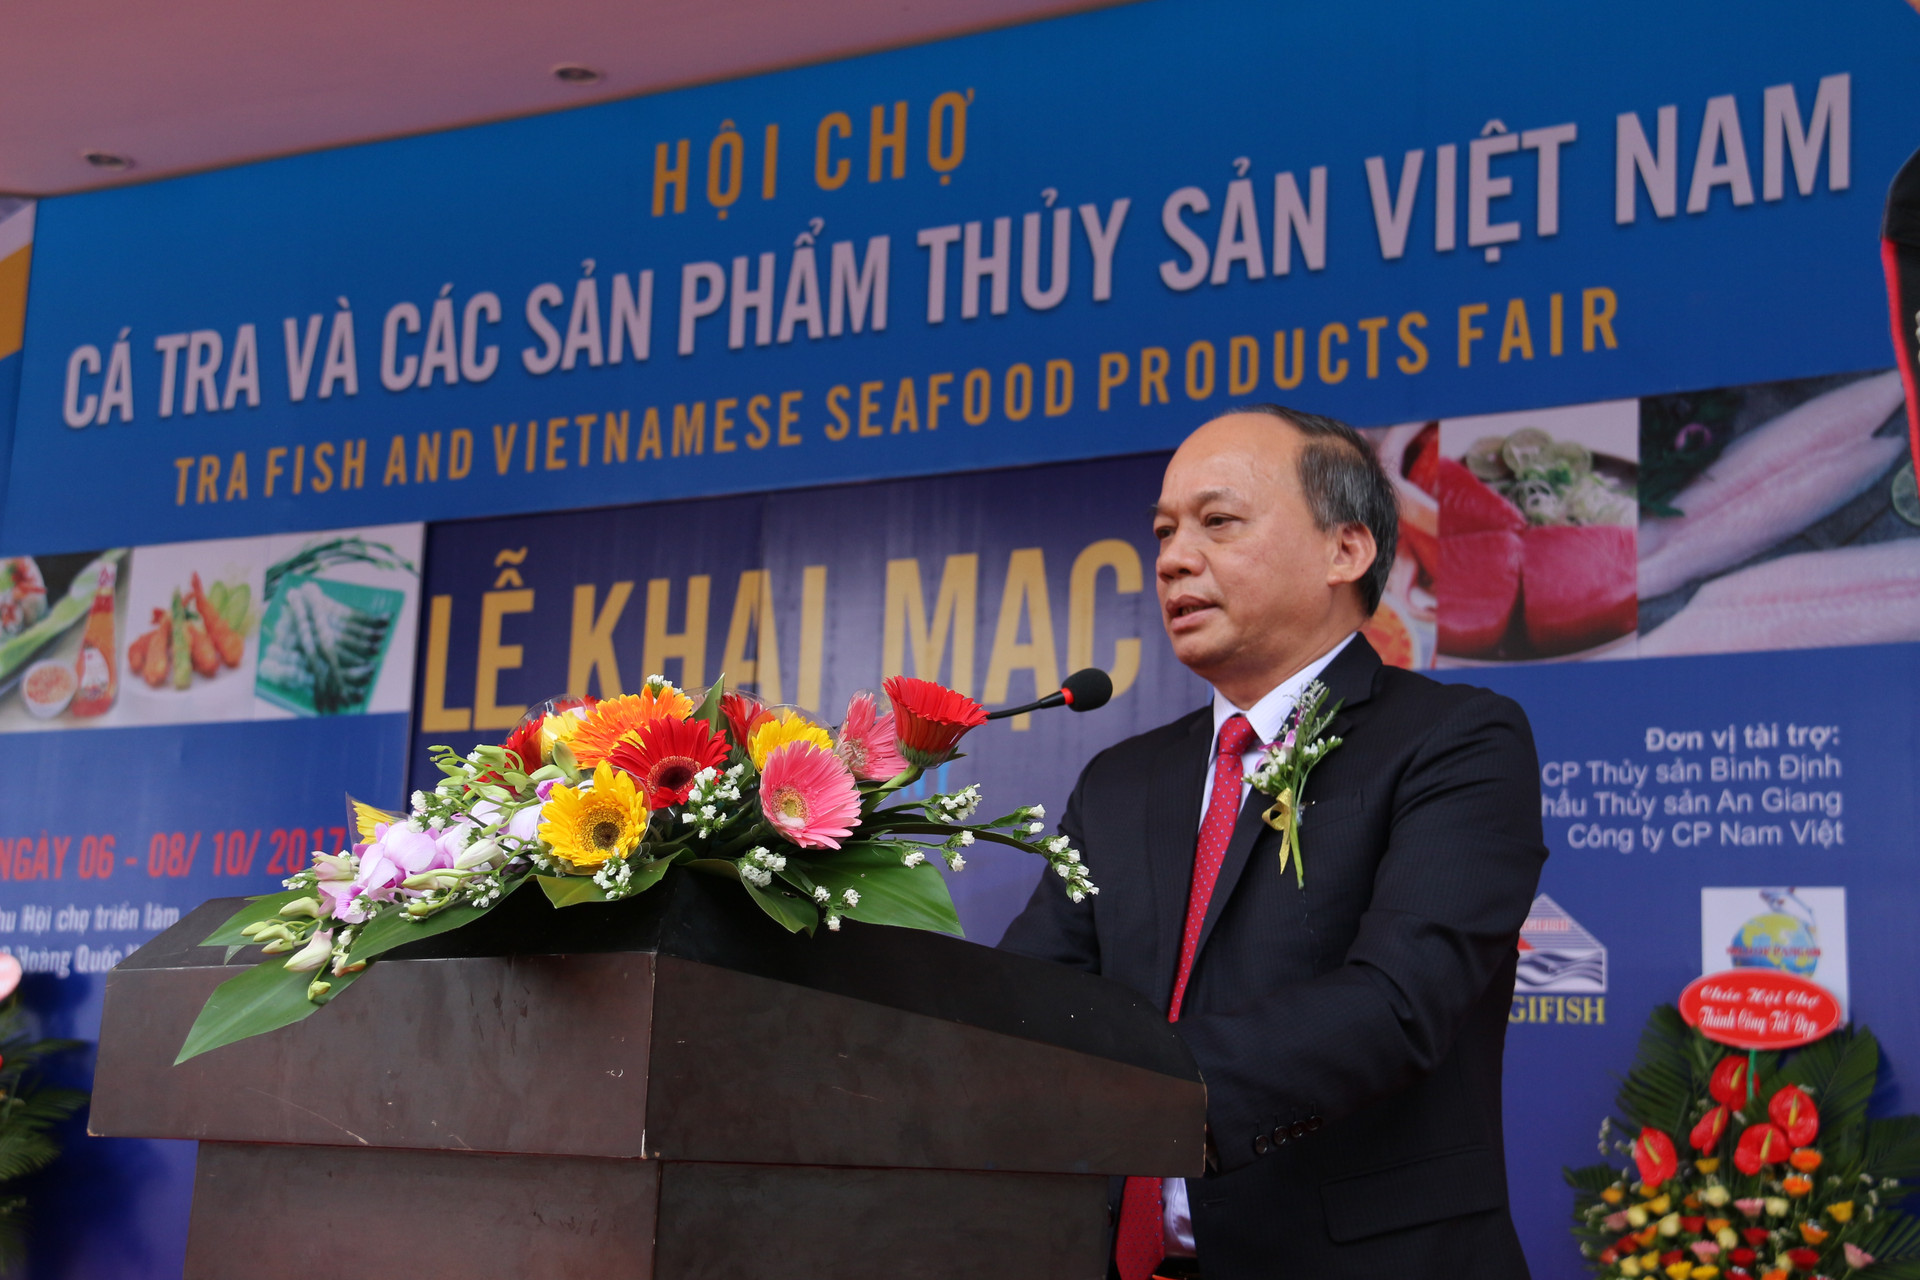 Khai mạc Hội chợ cá Tra và các sản phẩm thủy sản Việt Nam